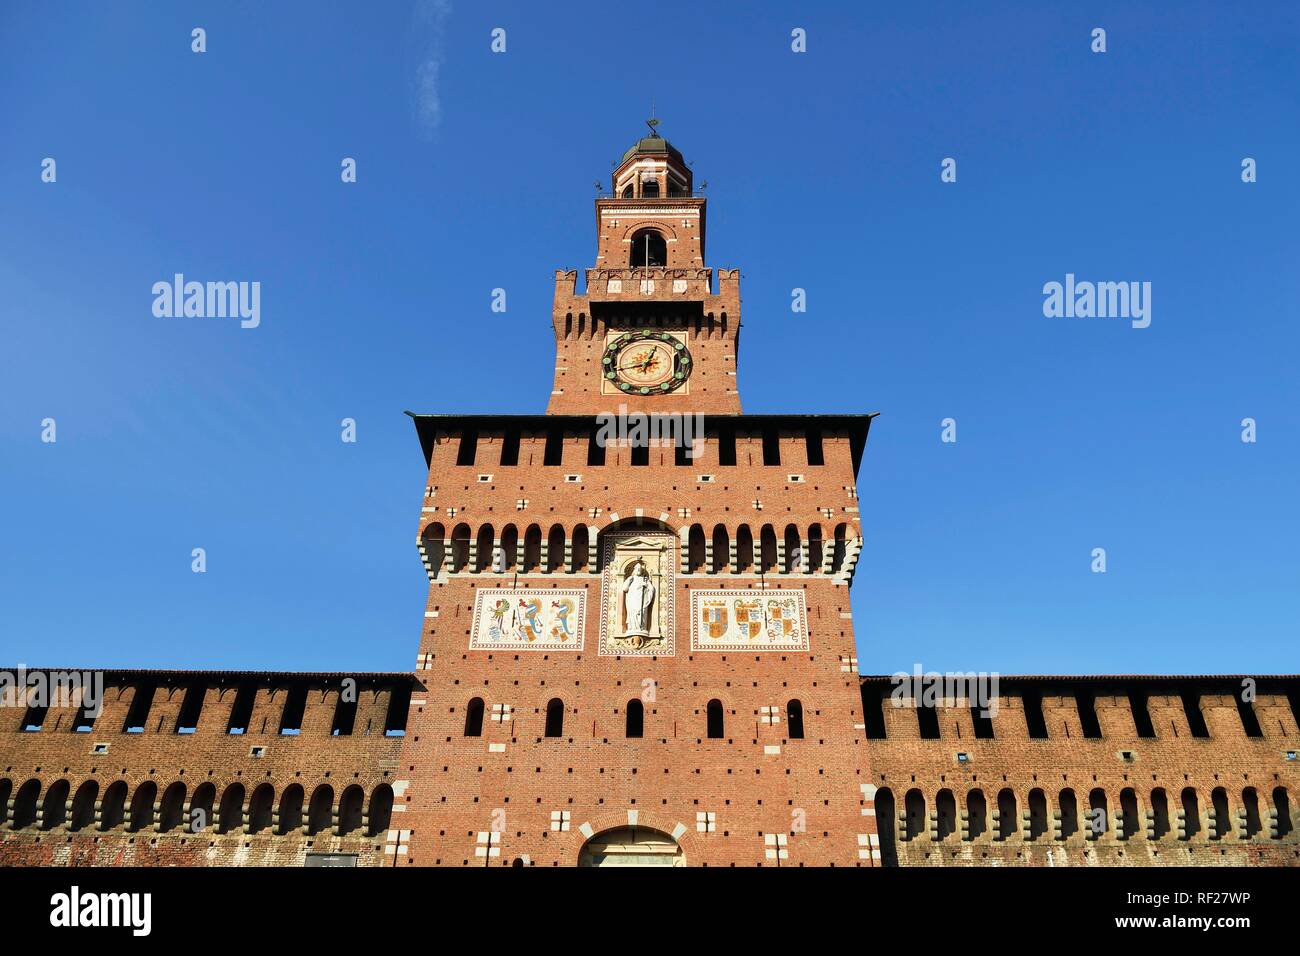 Castello Sforzesco, Sforza Castle, Milan, Lombardy, Italy Stock Photo